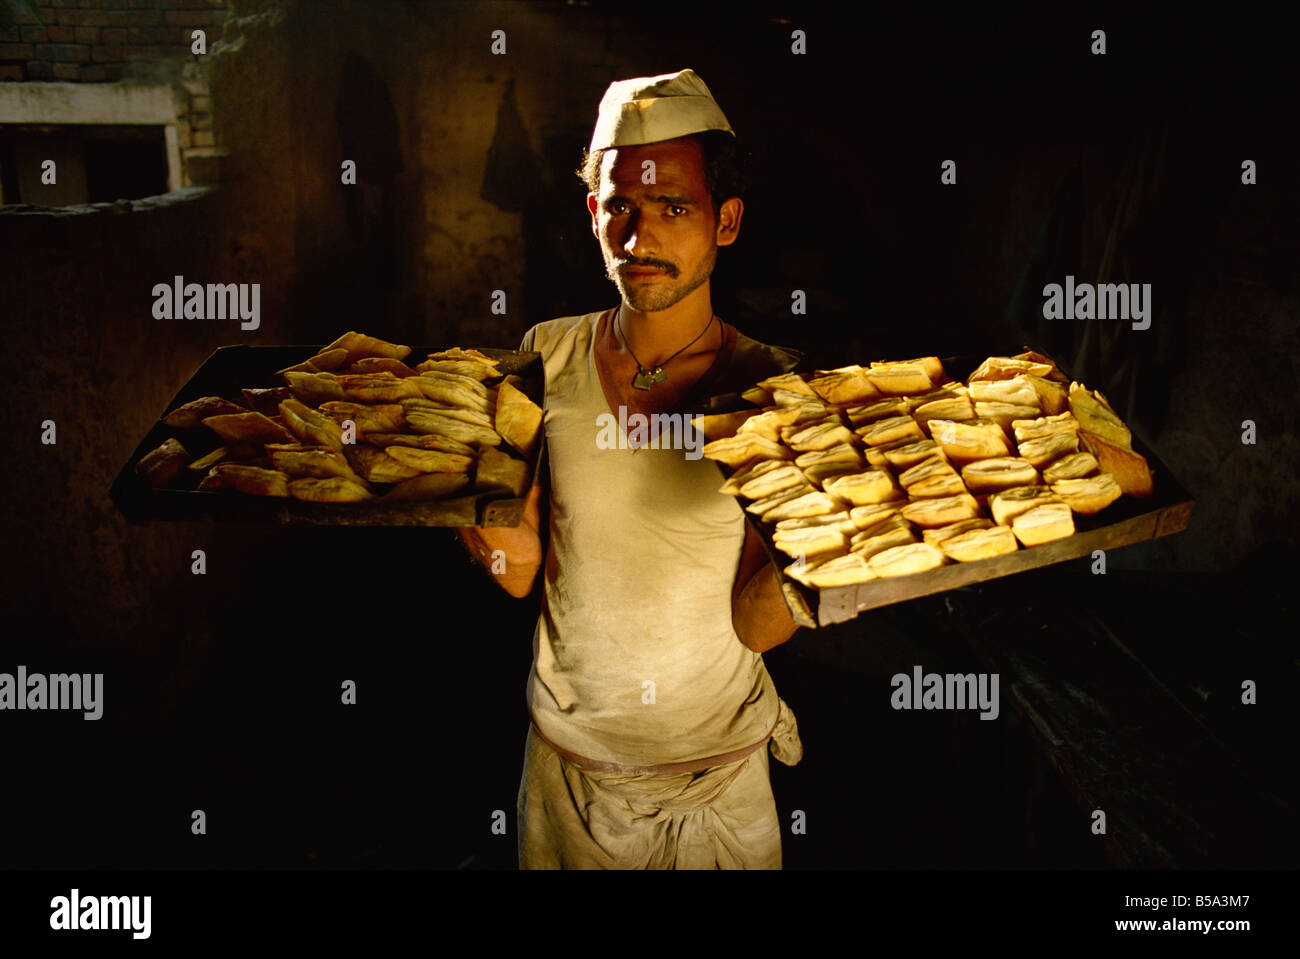 Boulangerie dans le Nord de l'Inde Asie Inde Banque D'Images